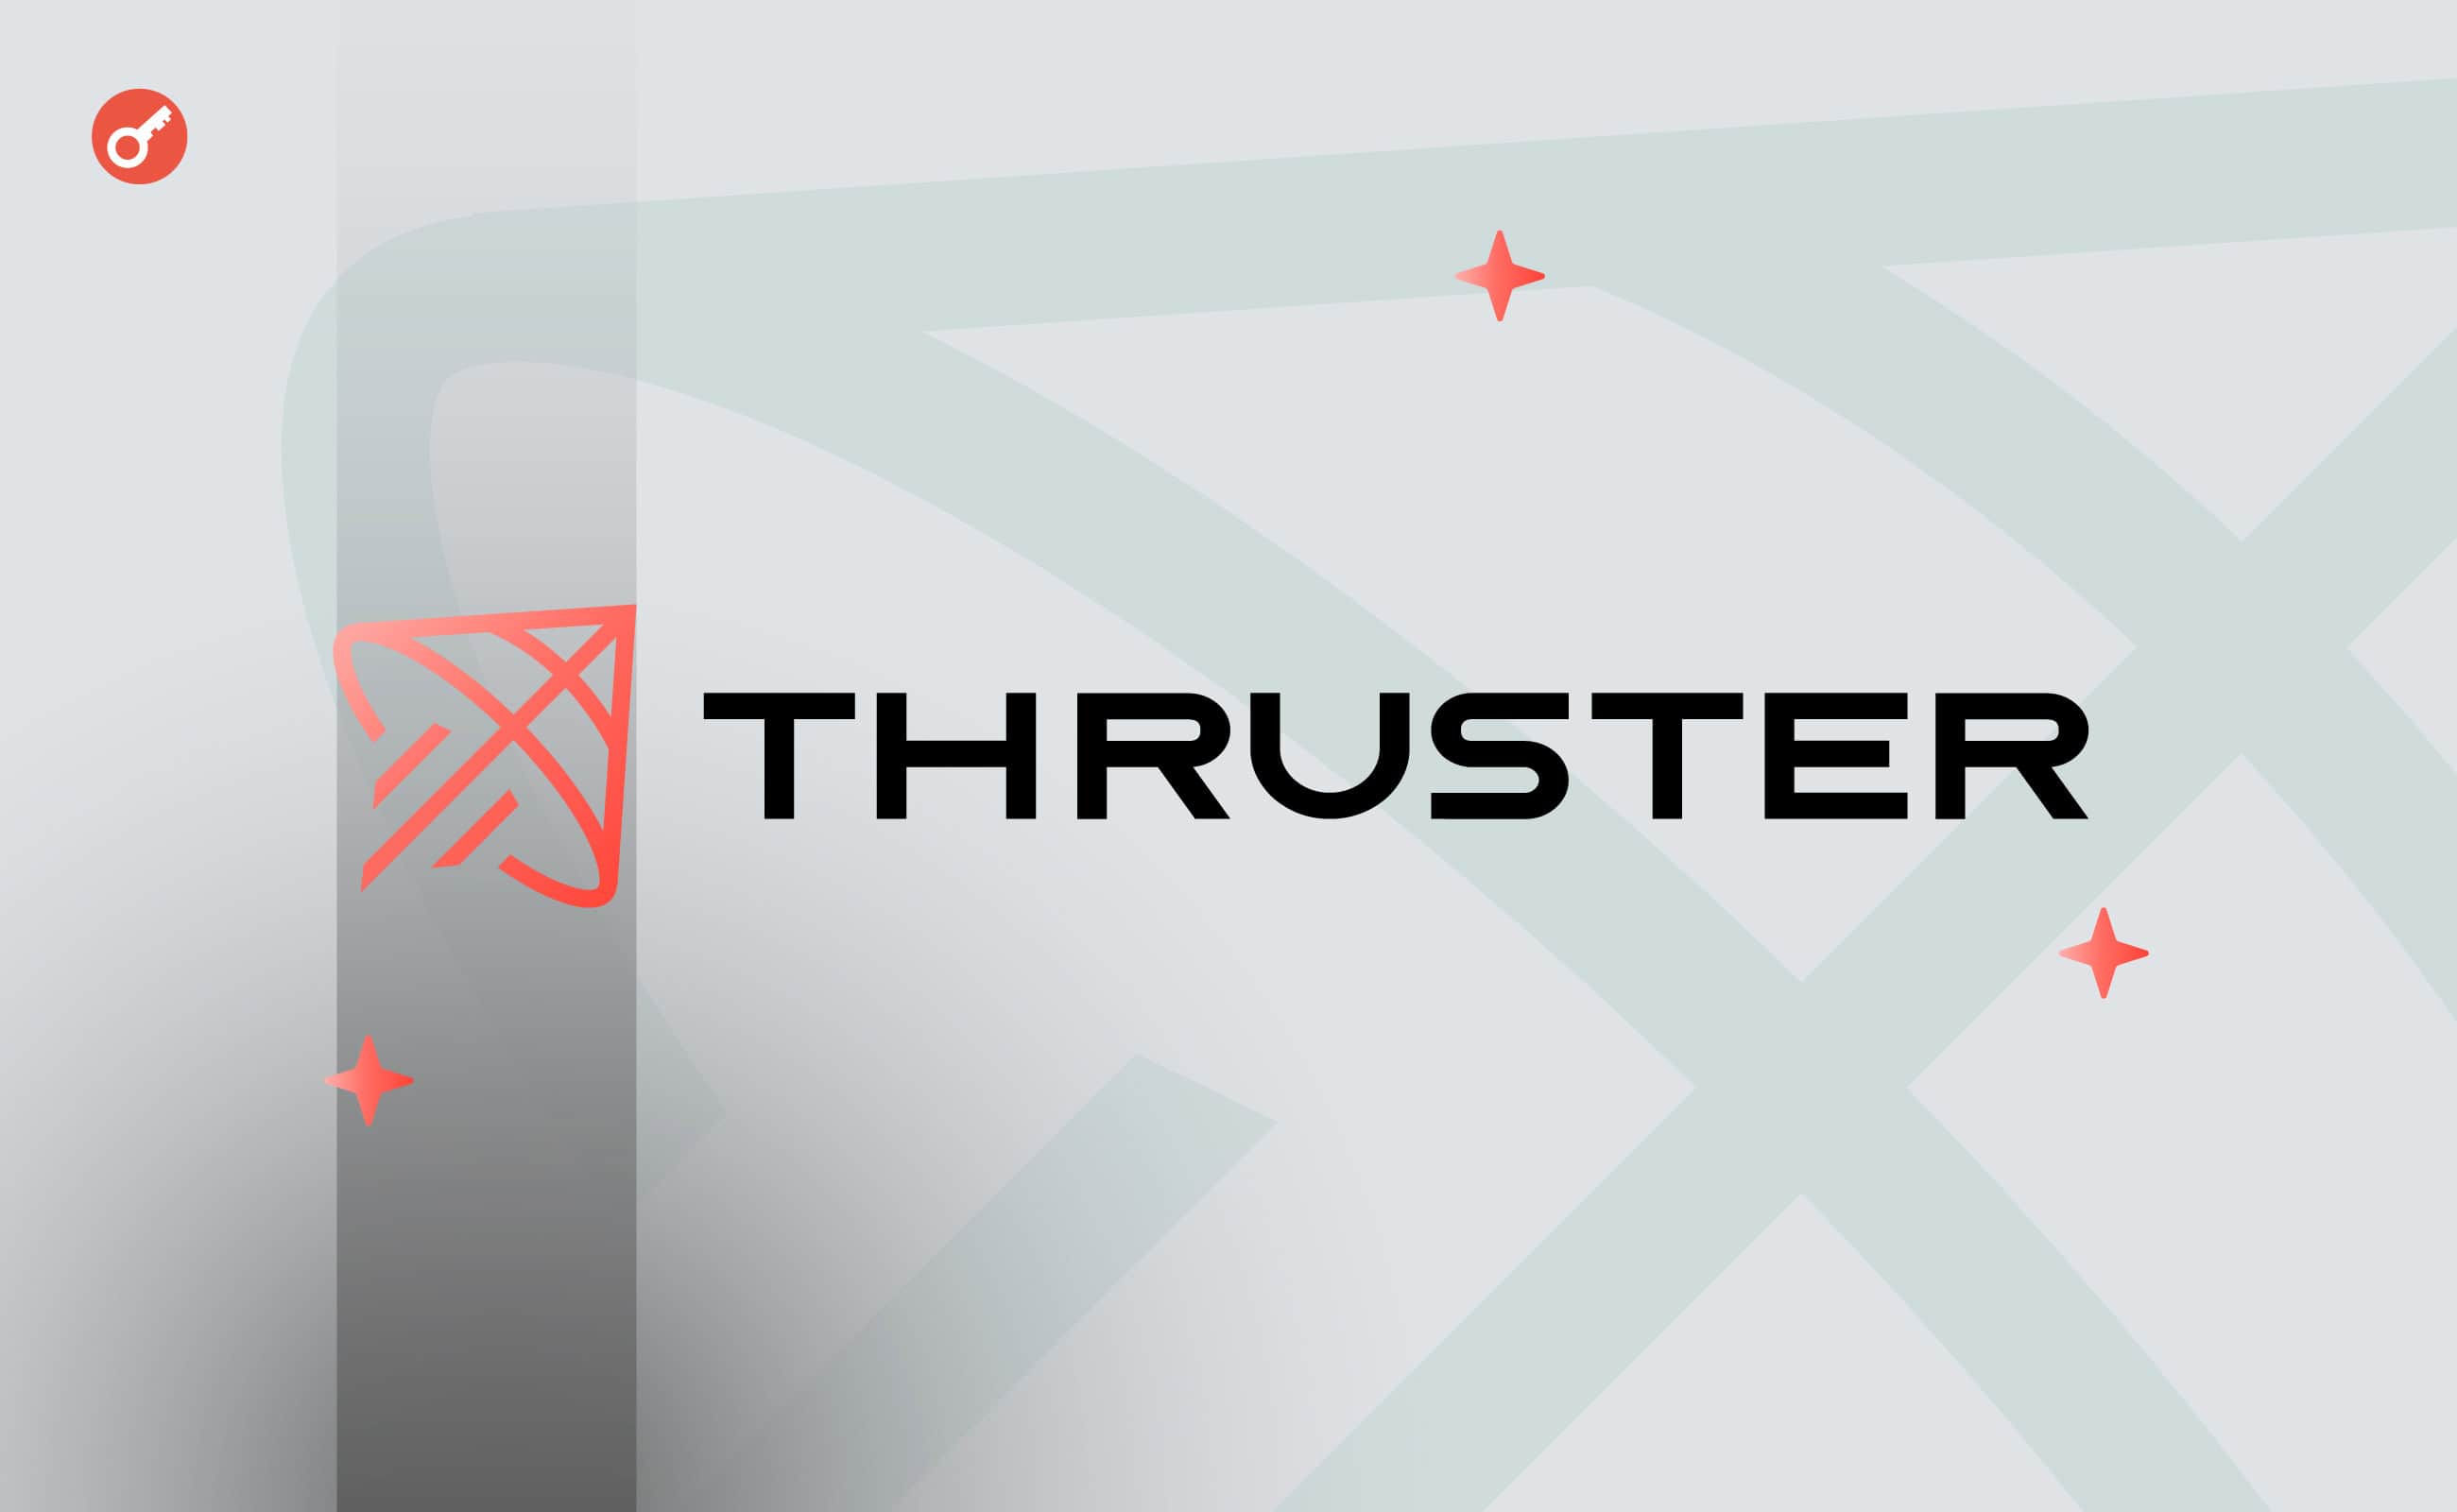 DEX Thruster залучила $7,5 млн під керівництвом Pantera Capital. Головний колаж новини.